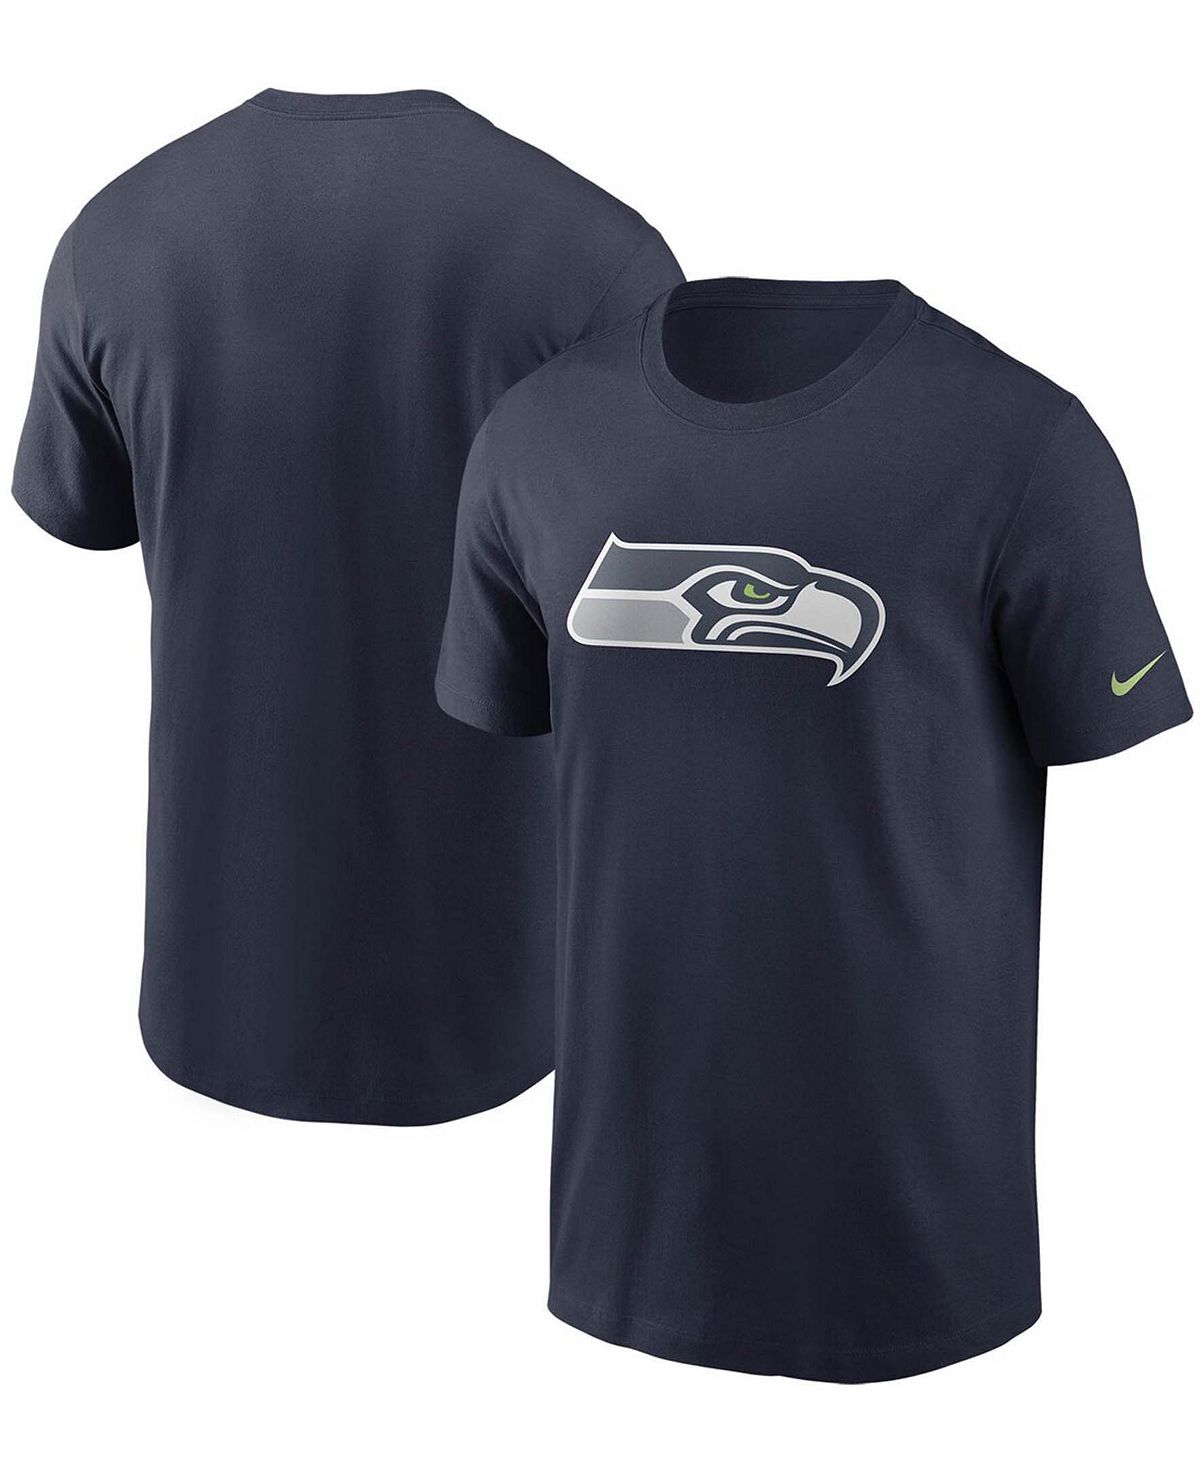 Мужская темно-синяя футболка с логотипом Seattle Seahawks College Nike